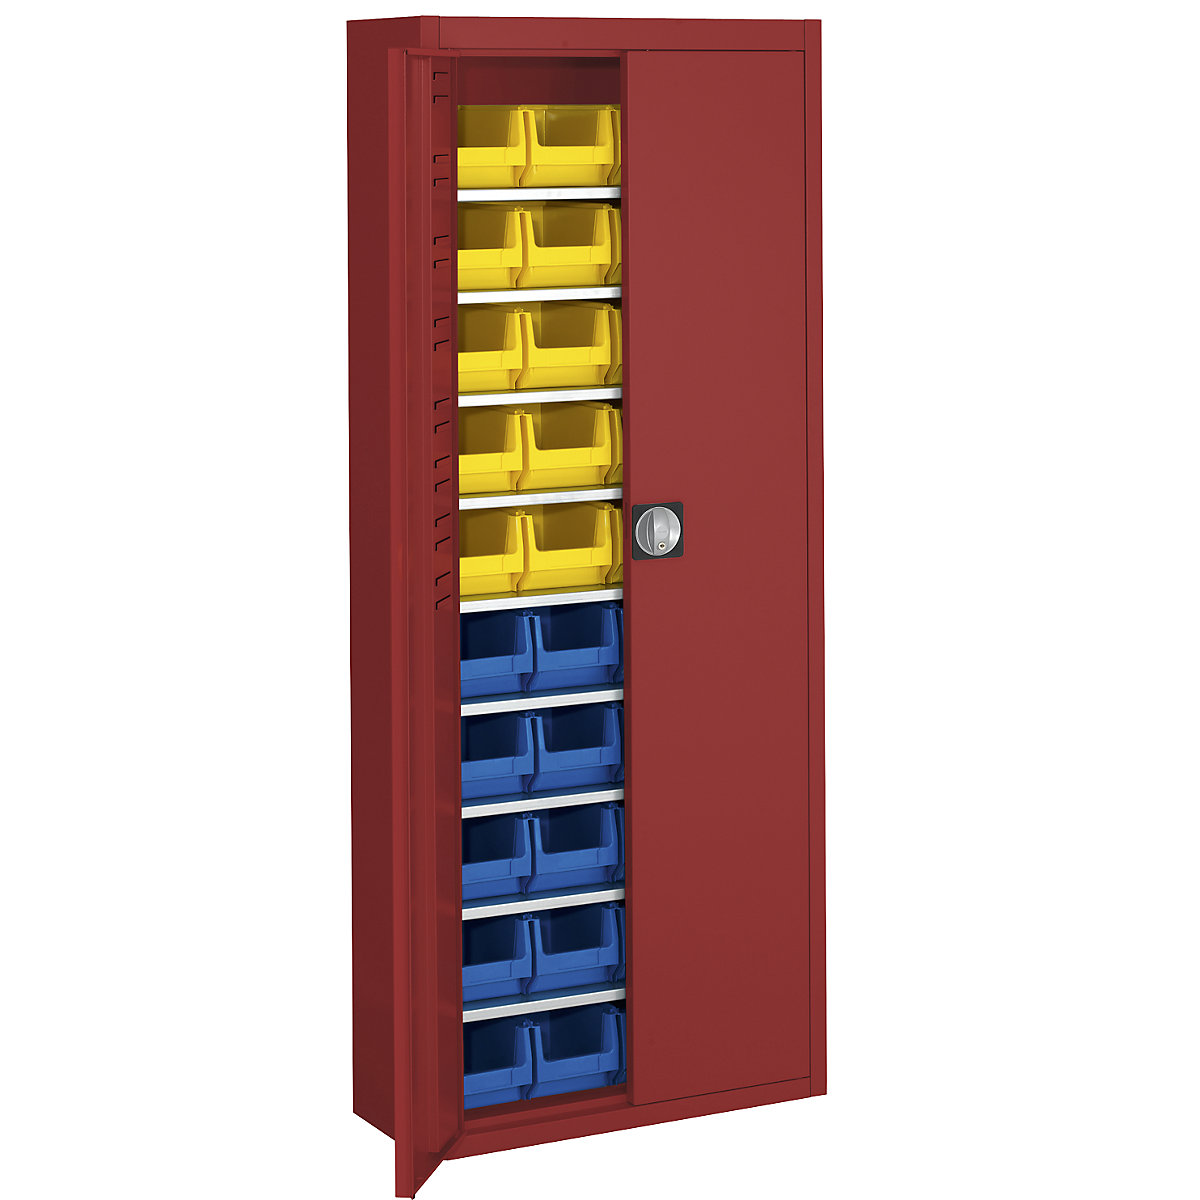 Skladiščna omara z odprtimi skladiščnimi posodami – mauser, VxŠxG 1740 x 680 x 280 mm, ena barva, rdeča, 40 posod-17